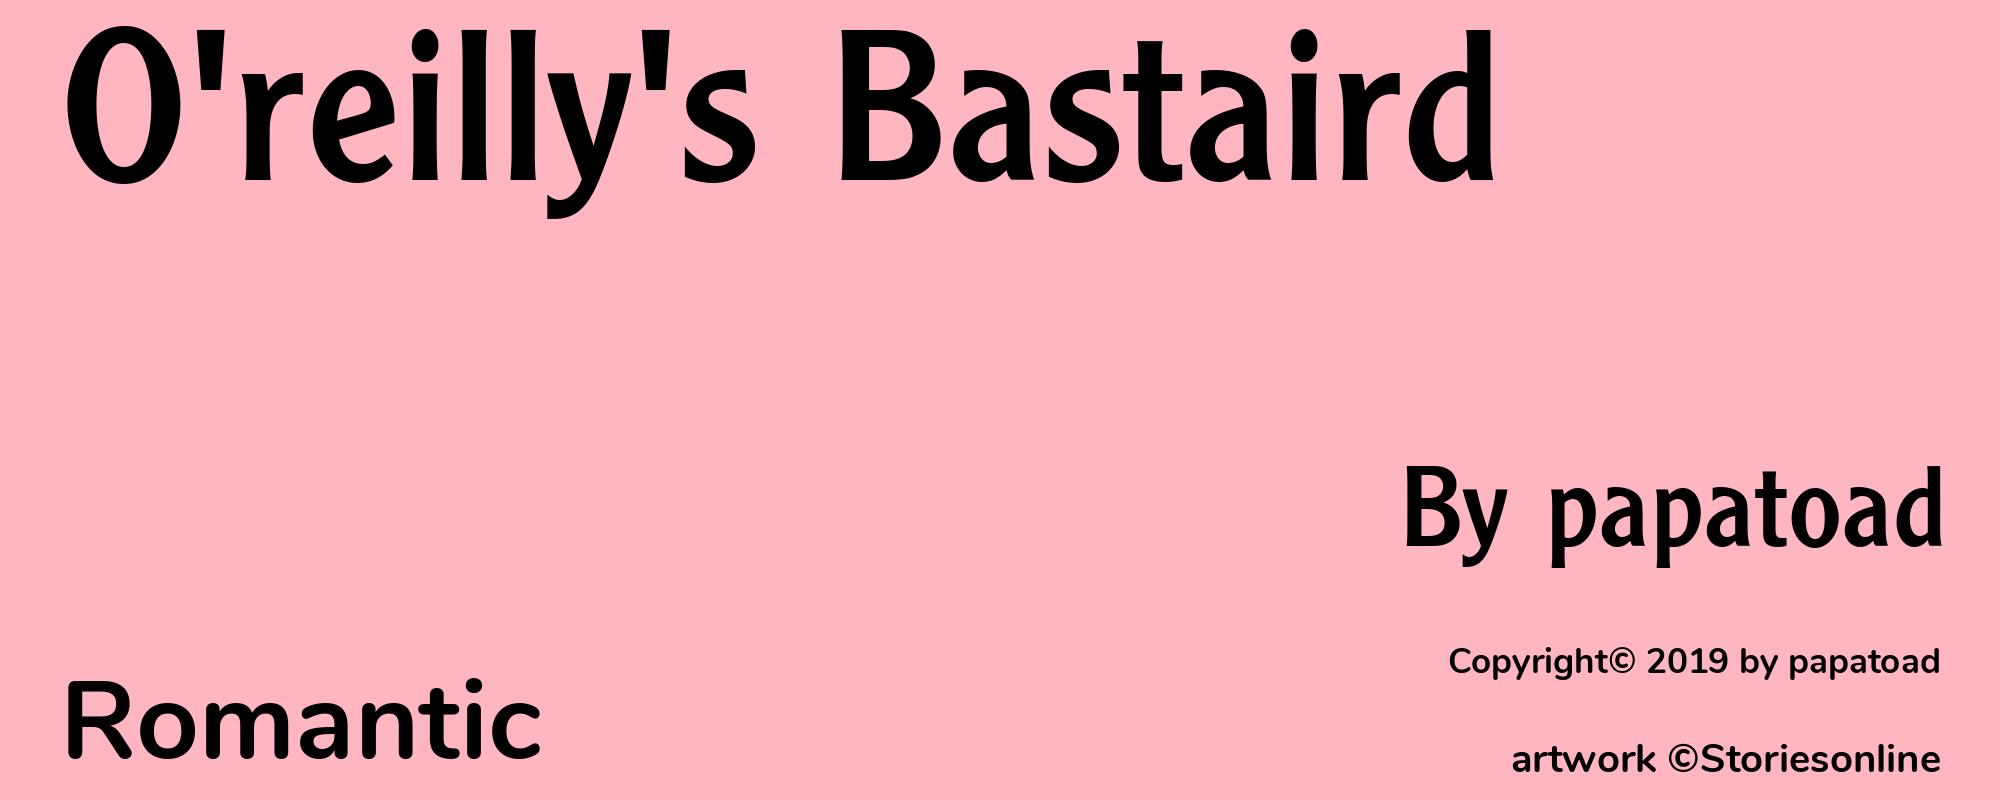 O'reilly's Bastaird - Cover